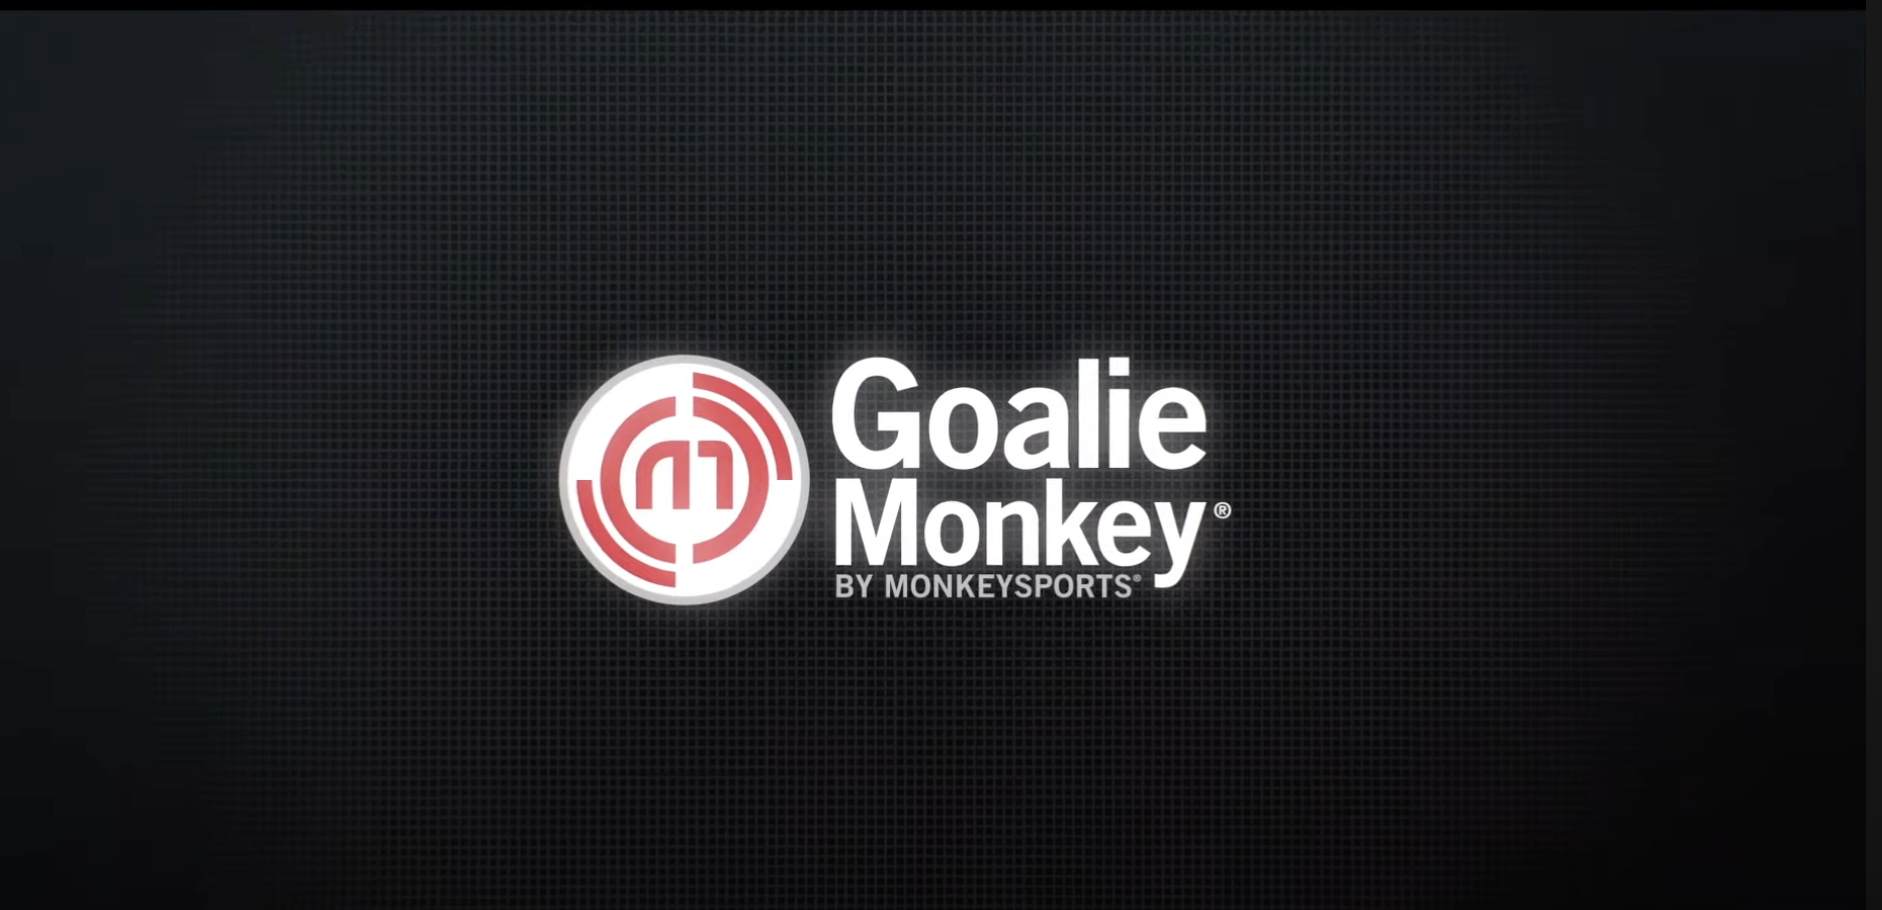 goalie monkey image